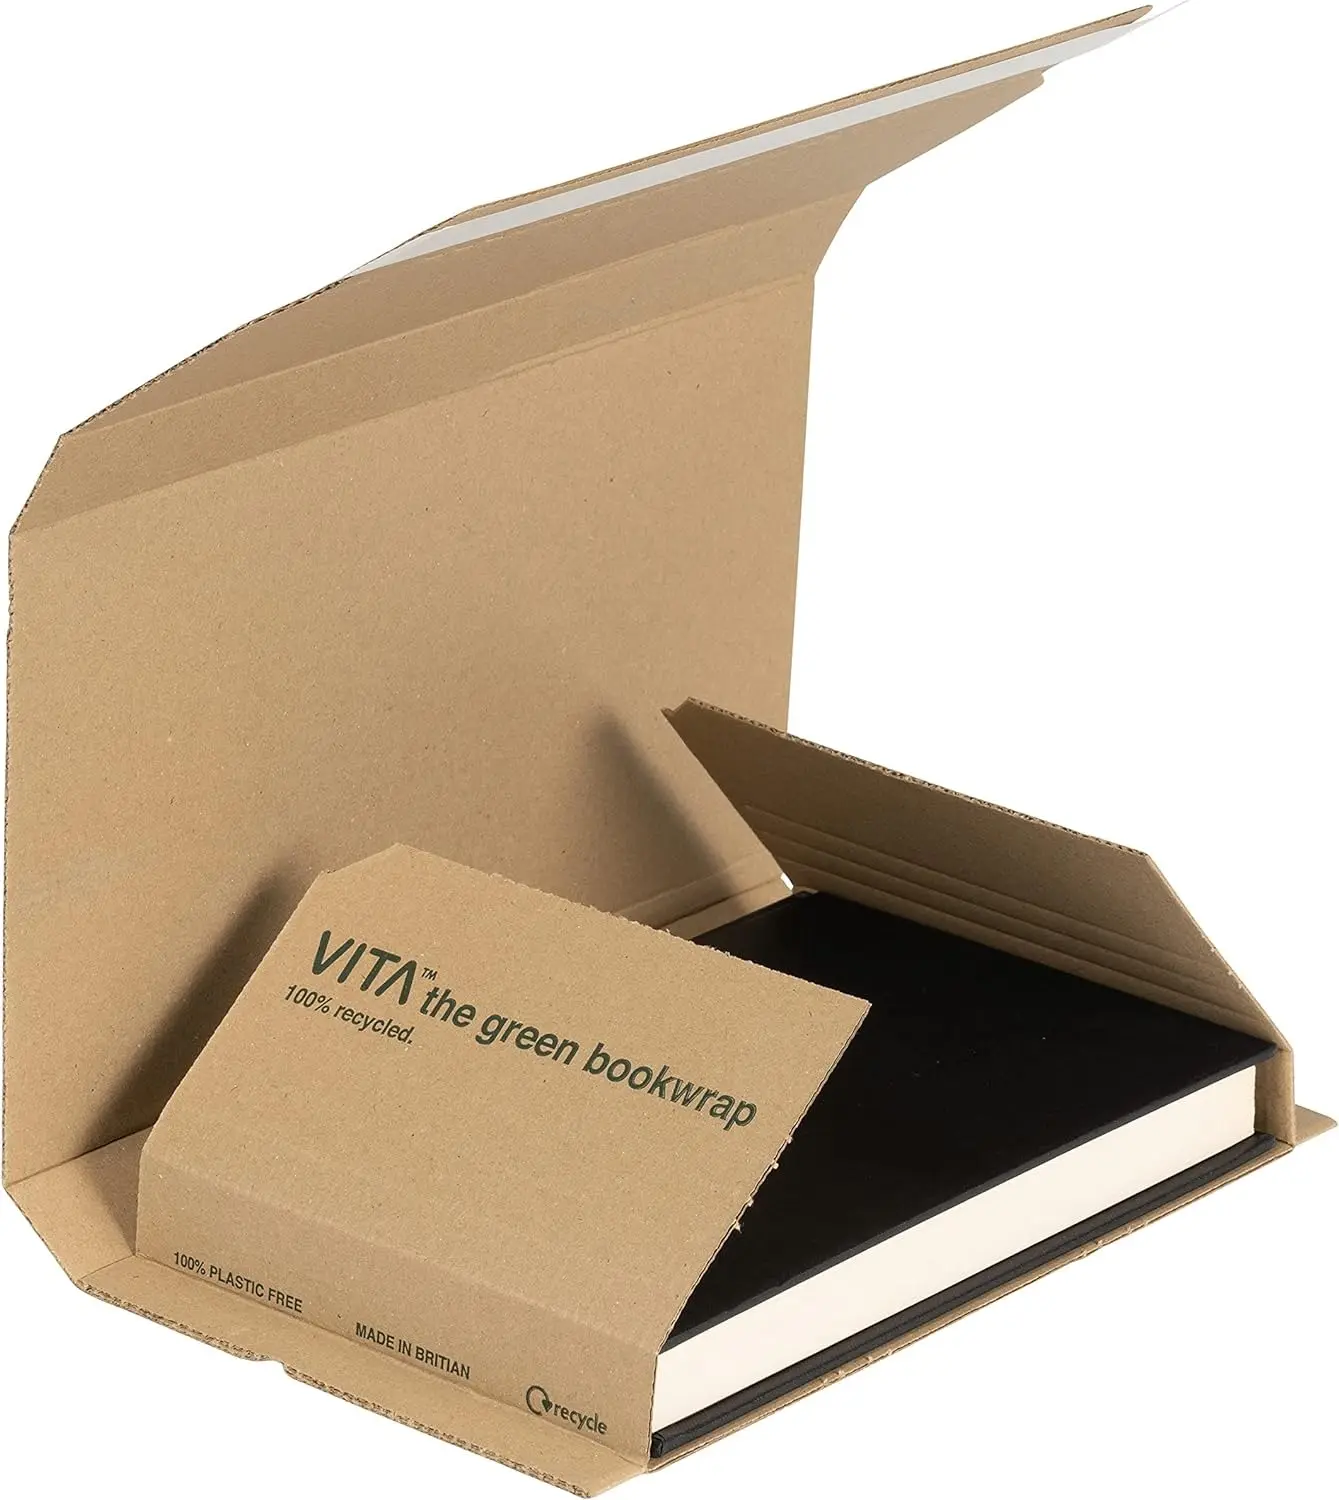 Kendinden mühür sarma kitap postaları ayarlanabilir ambalaj kutusu posta kitap sarma karton posta kutuları